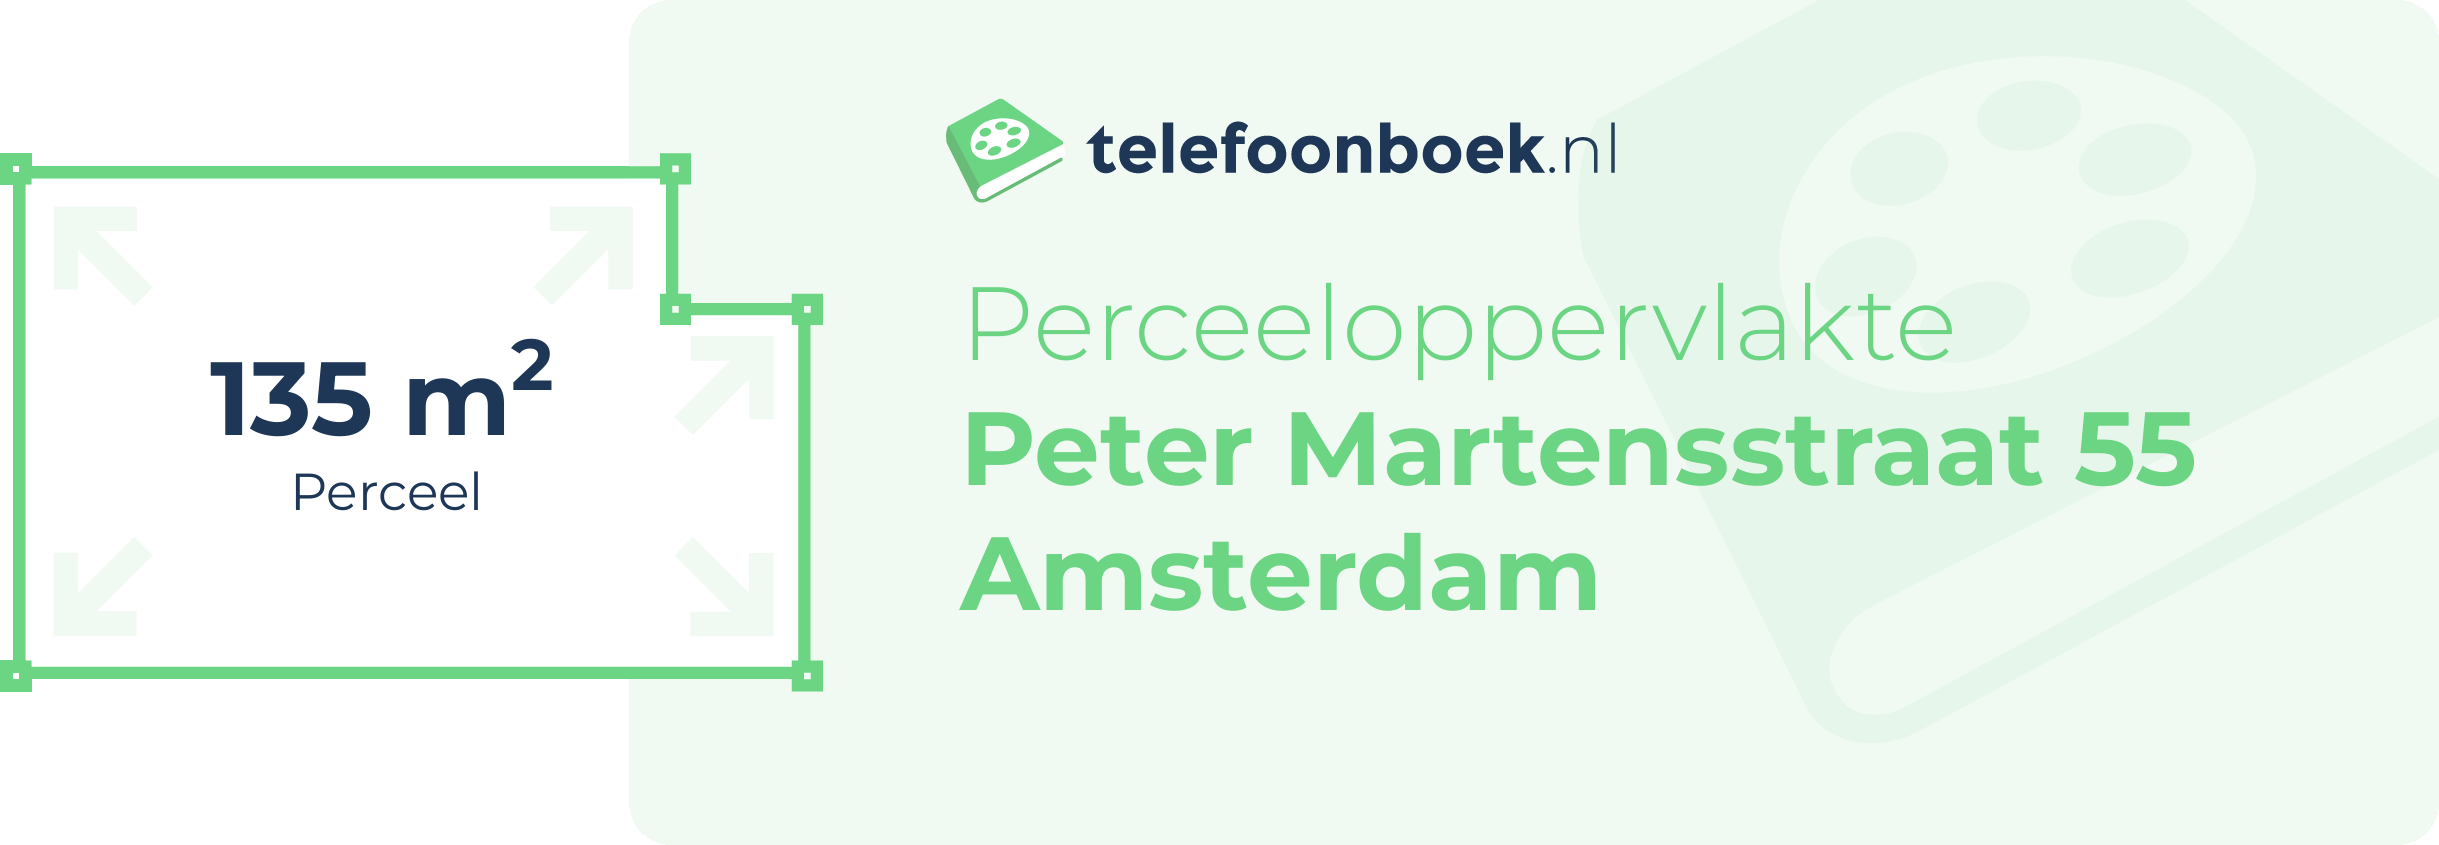 Perceeloppervlakte Peter Martensstraat 55 Amsterdam